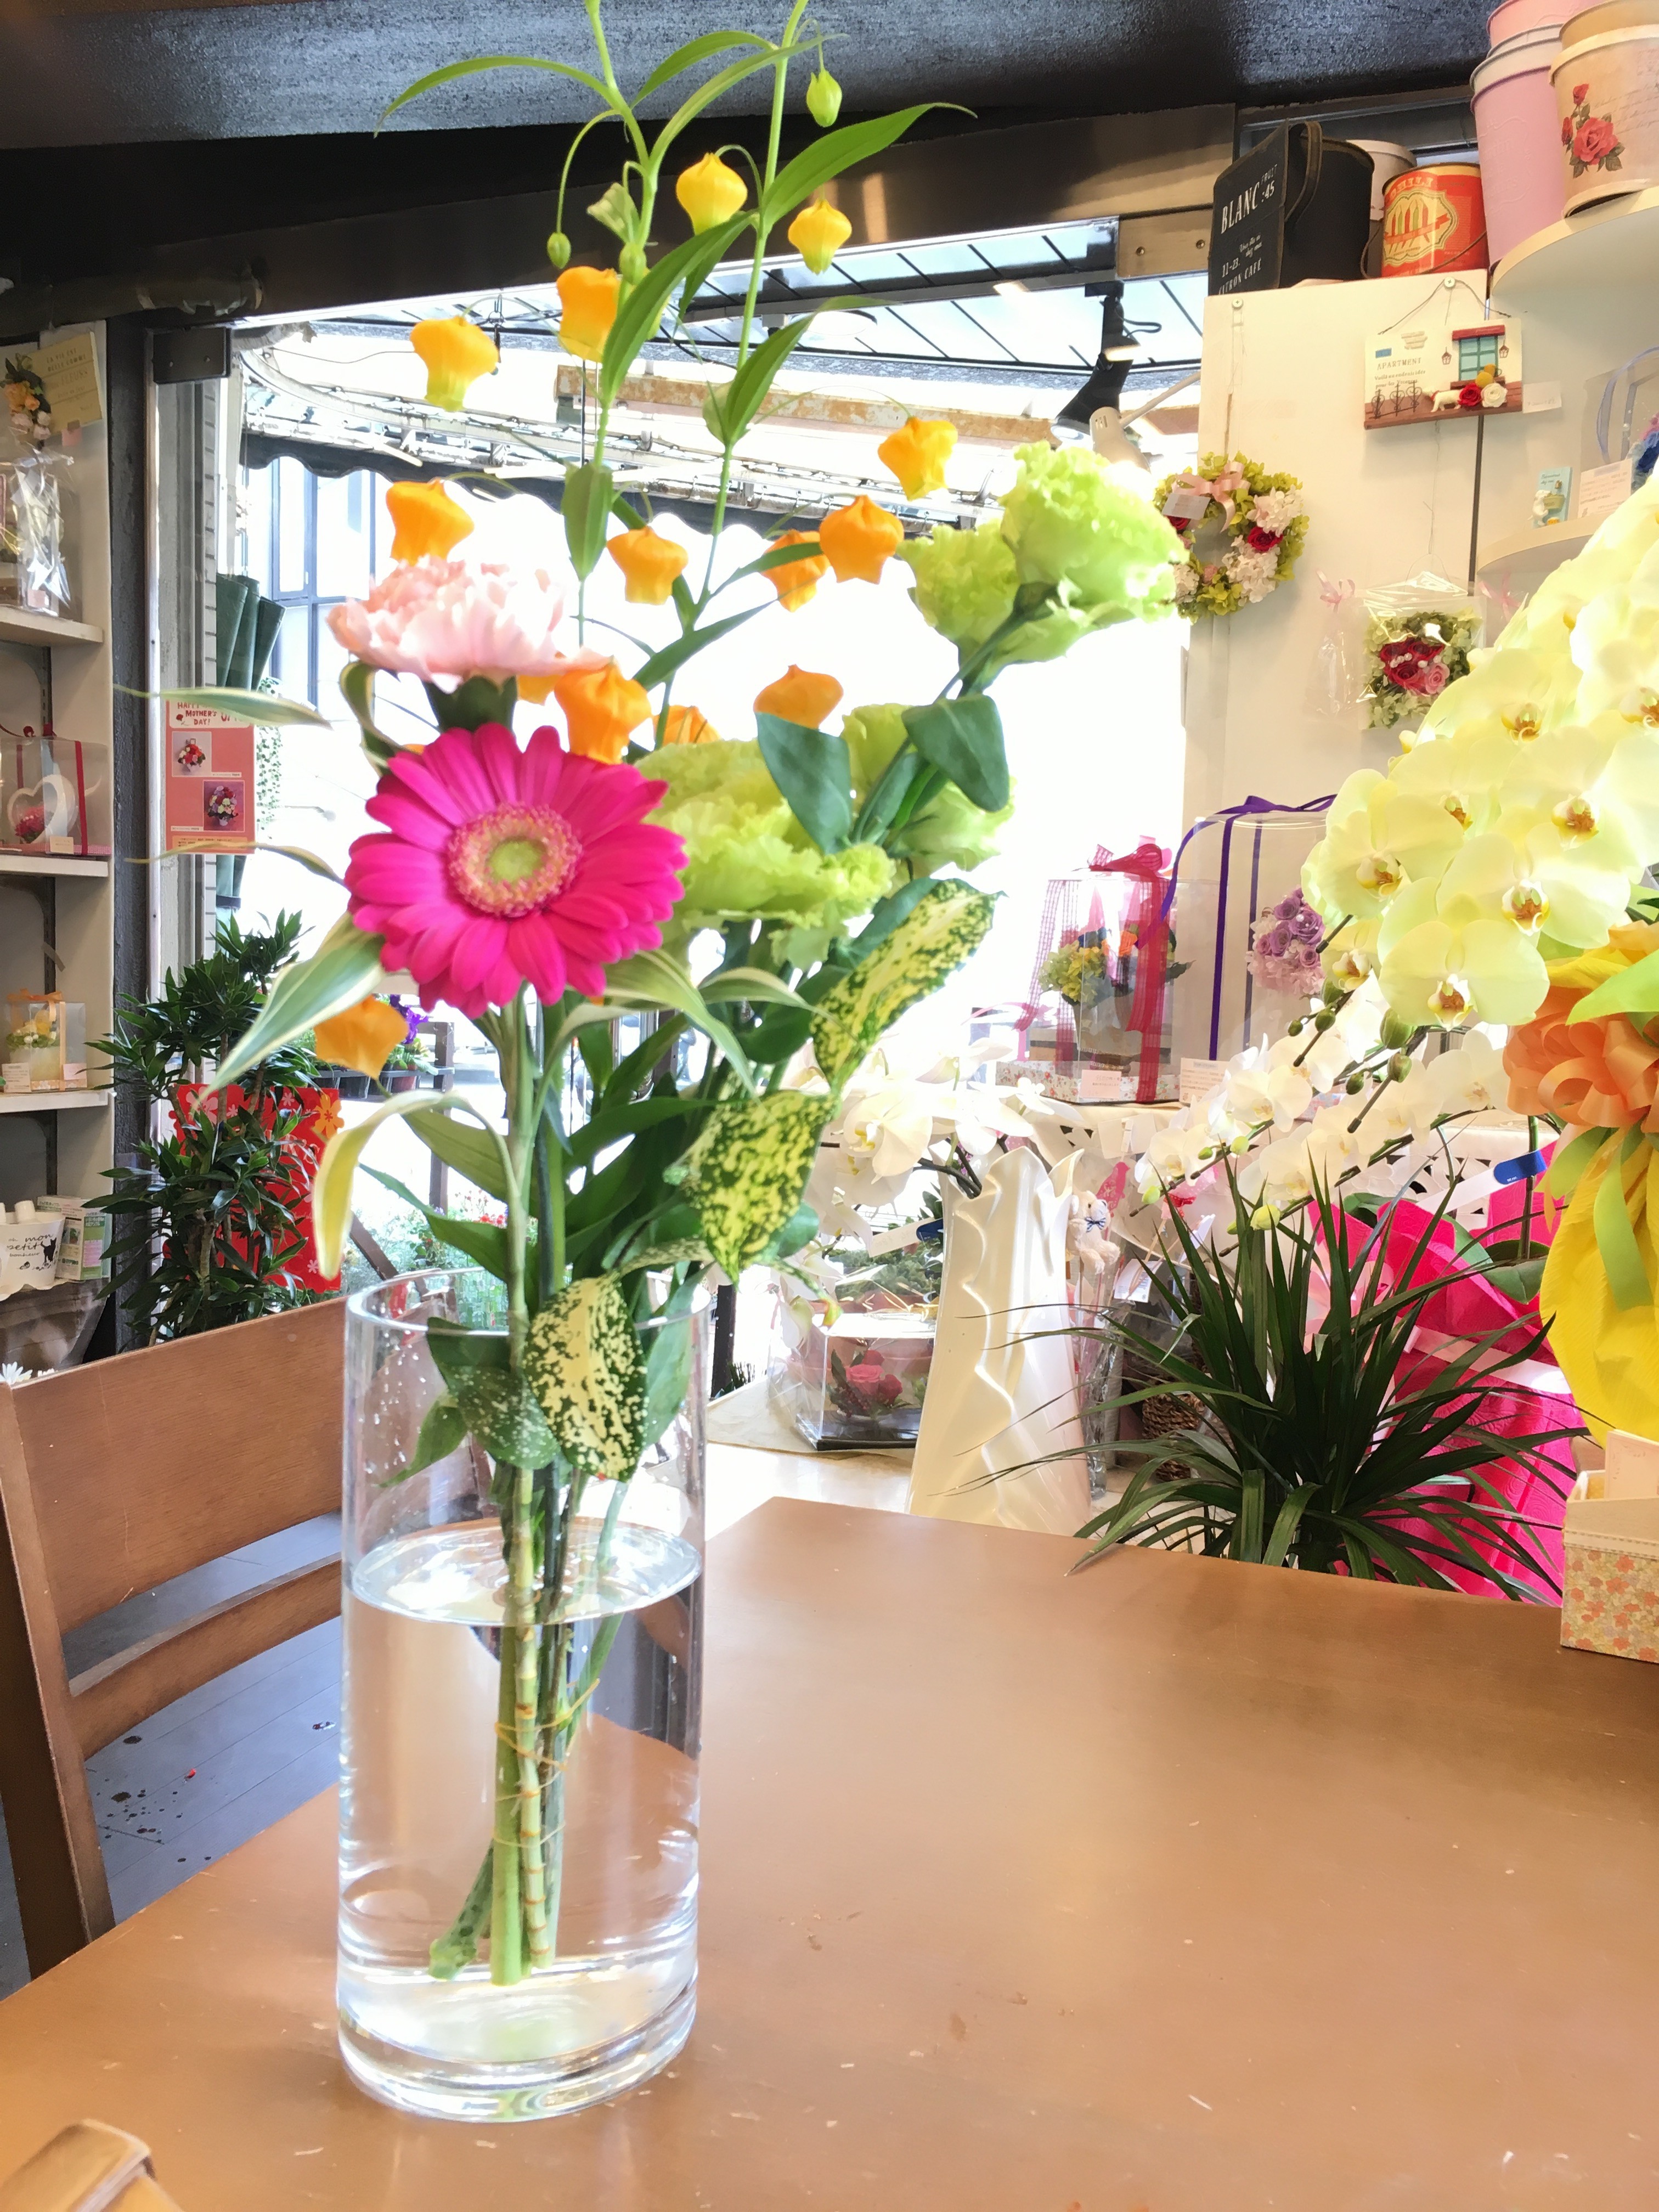 花束 アレンジメントを長持ちさせる方法を教えて下さい 大阪府豊中市の花屋 花の部屋